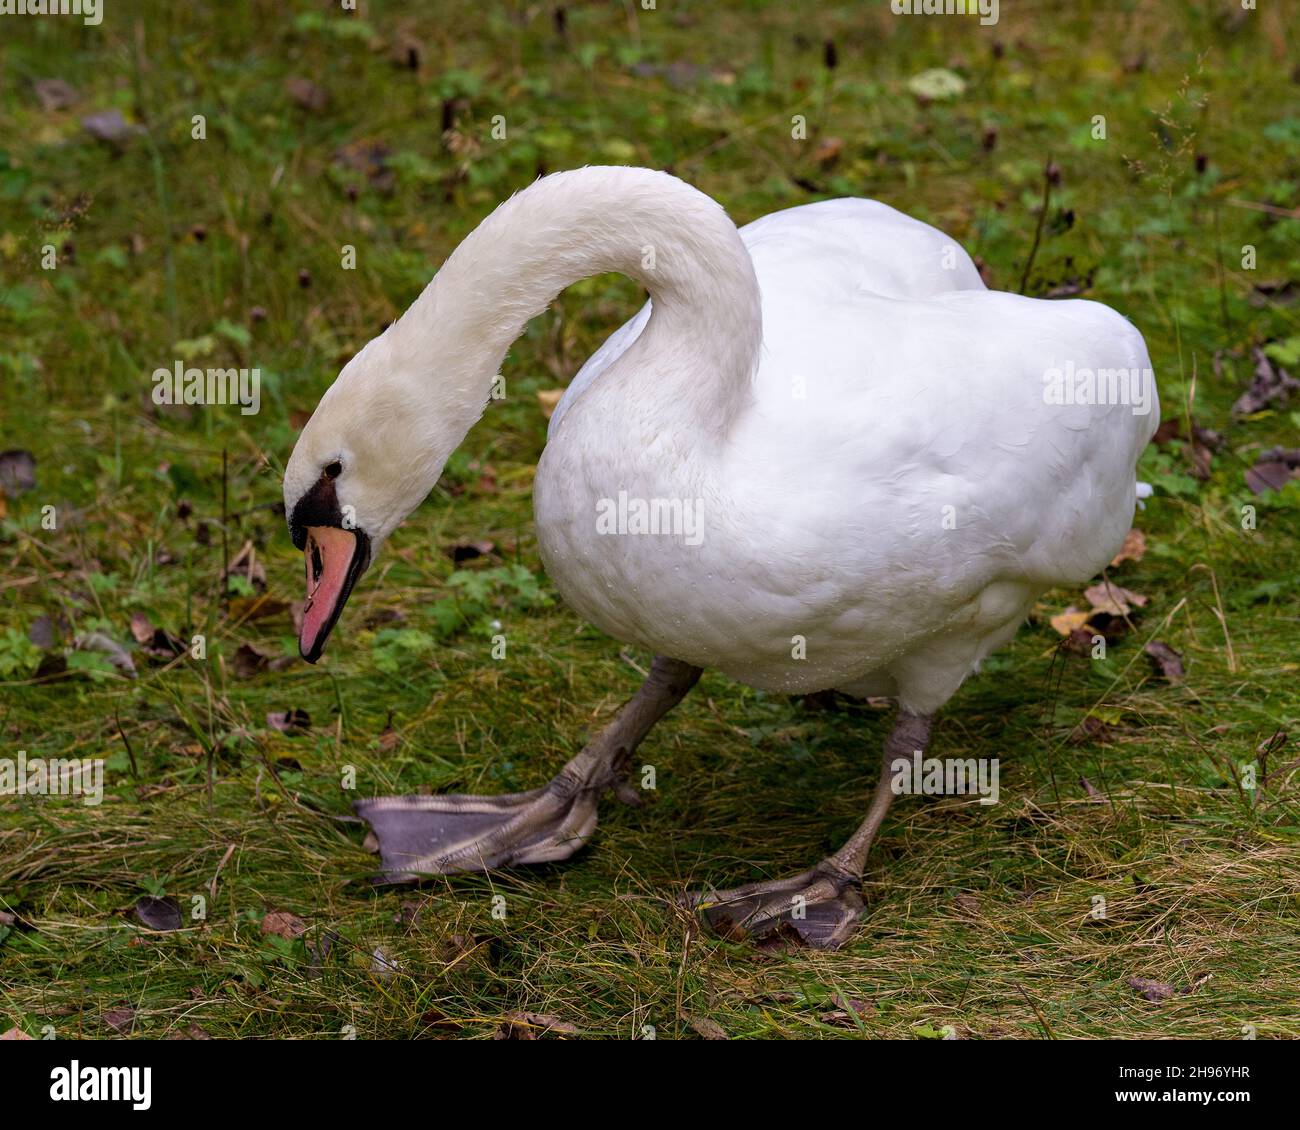 Swam Mute oiseau debout sur l'herbe montrant son beau plumage de plumes blanches dans son environnement et son habitat entourant.Image.Portrait. Banque D'Images